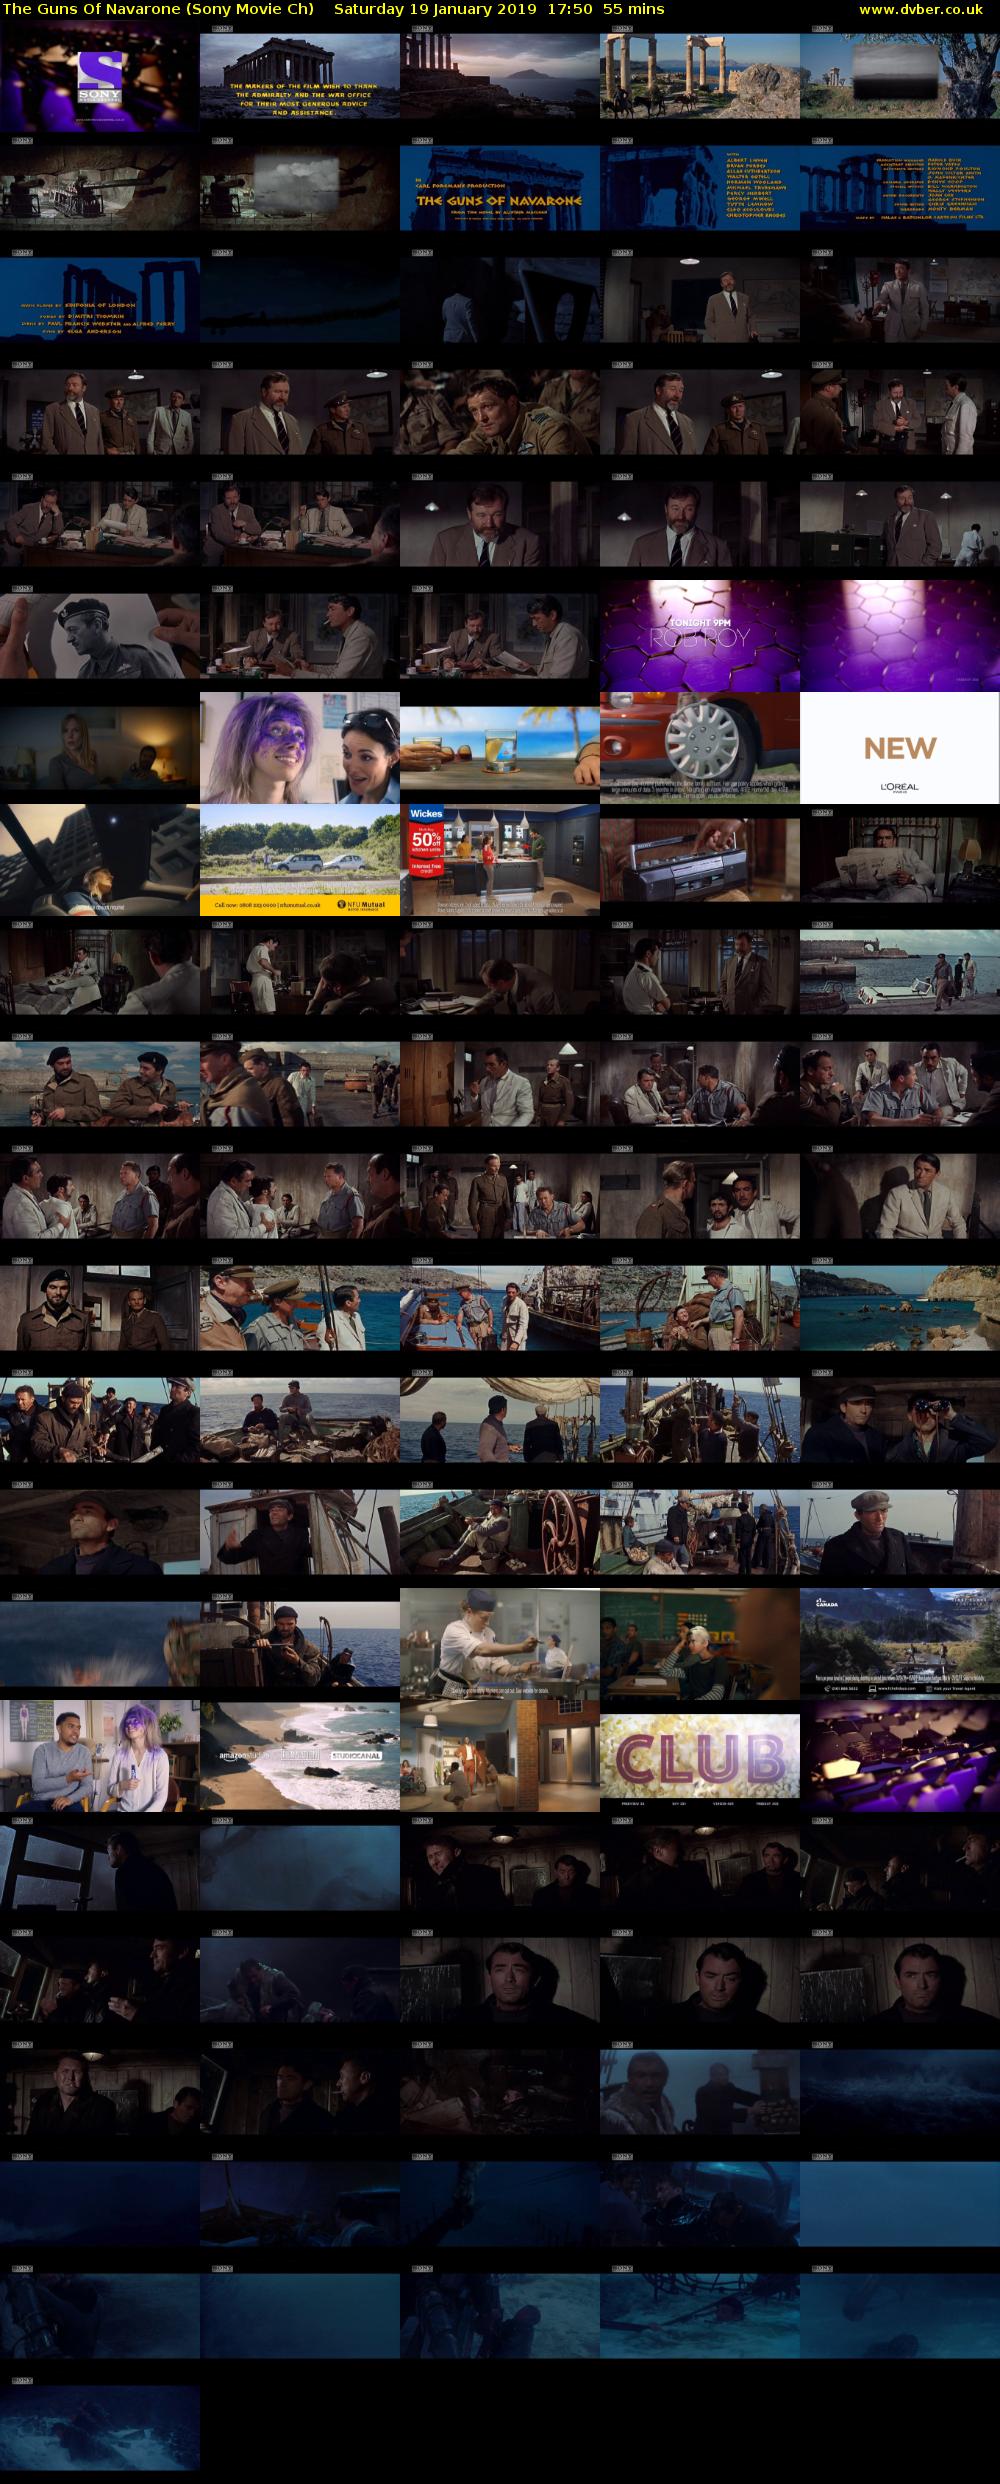 The Guns Of Navarone (Sony Movie Ch) Saturday 19 January 2019 17:50 - 18:45